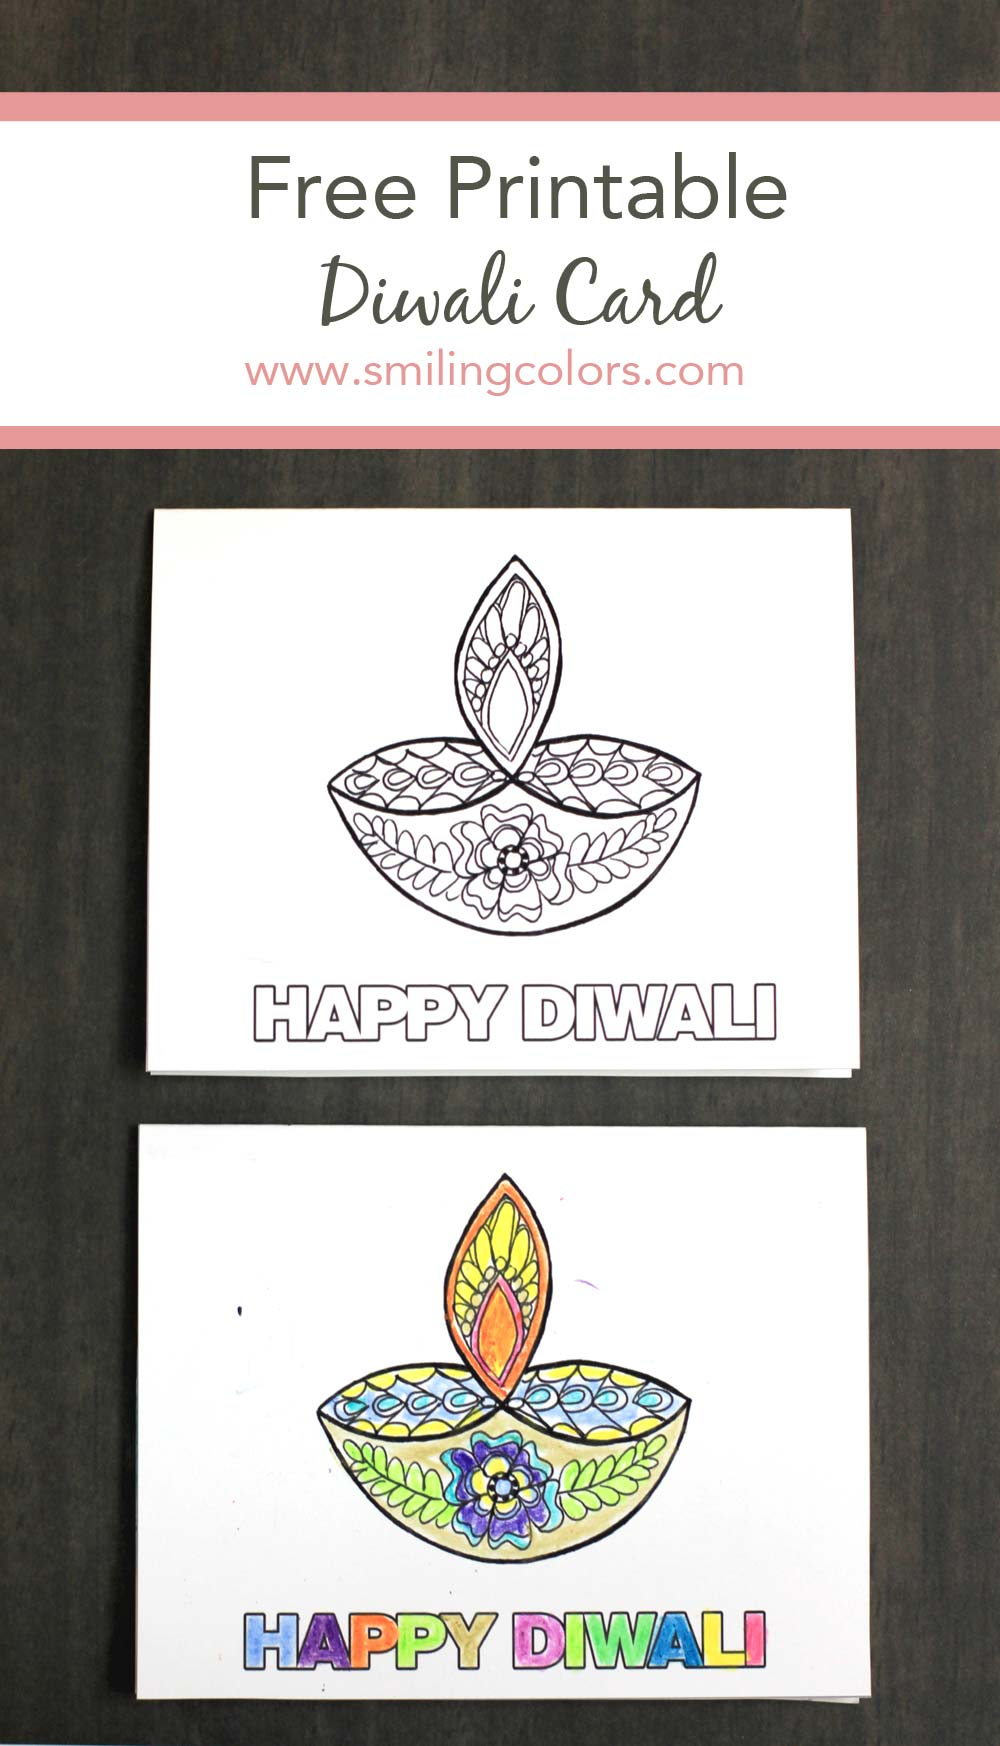 Free Printable Happy Diwali Card Smitha Katti